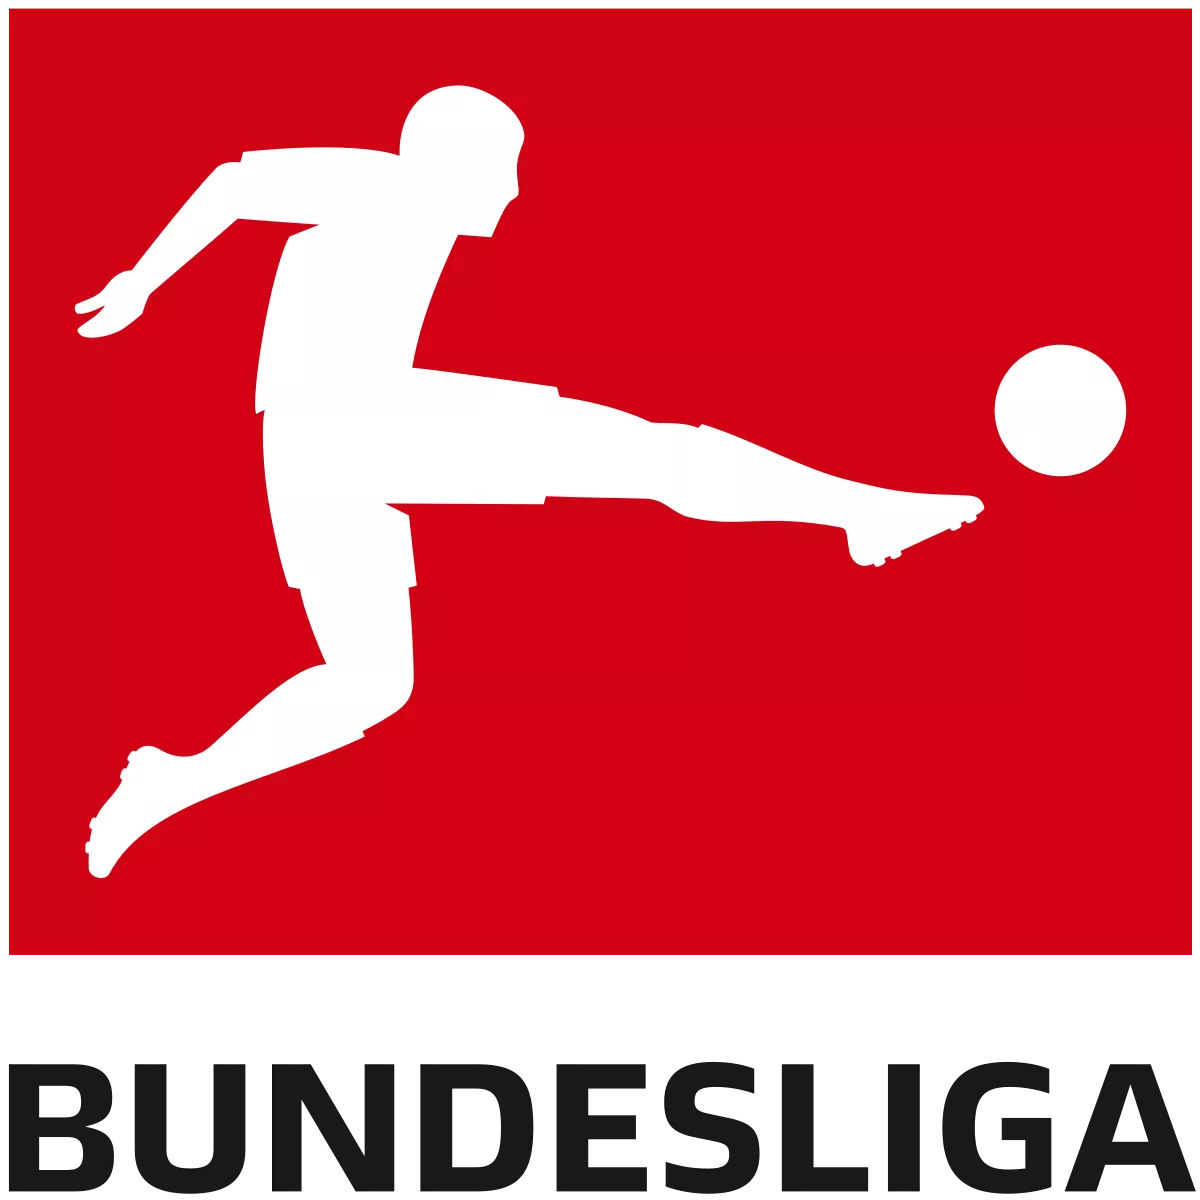 Bukmacher STS ma najwyższe kursy na ligę niemieckąWypróbuj ofertę na Bundesligę za darmowe bonusyDo wykorzystania jest m.in. freebet 25 zł i cashback 34 zł